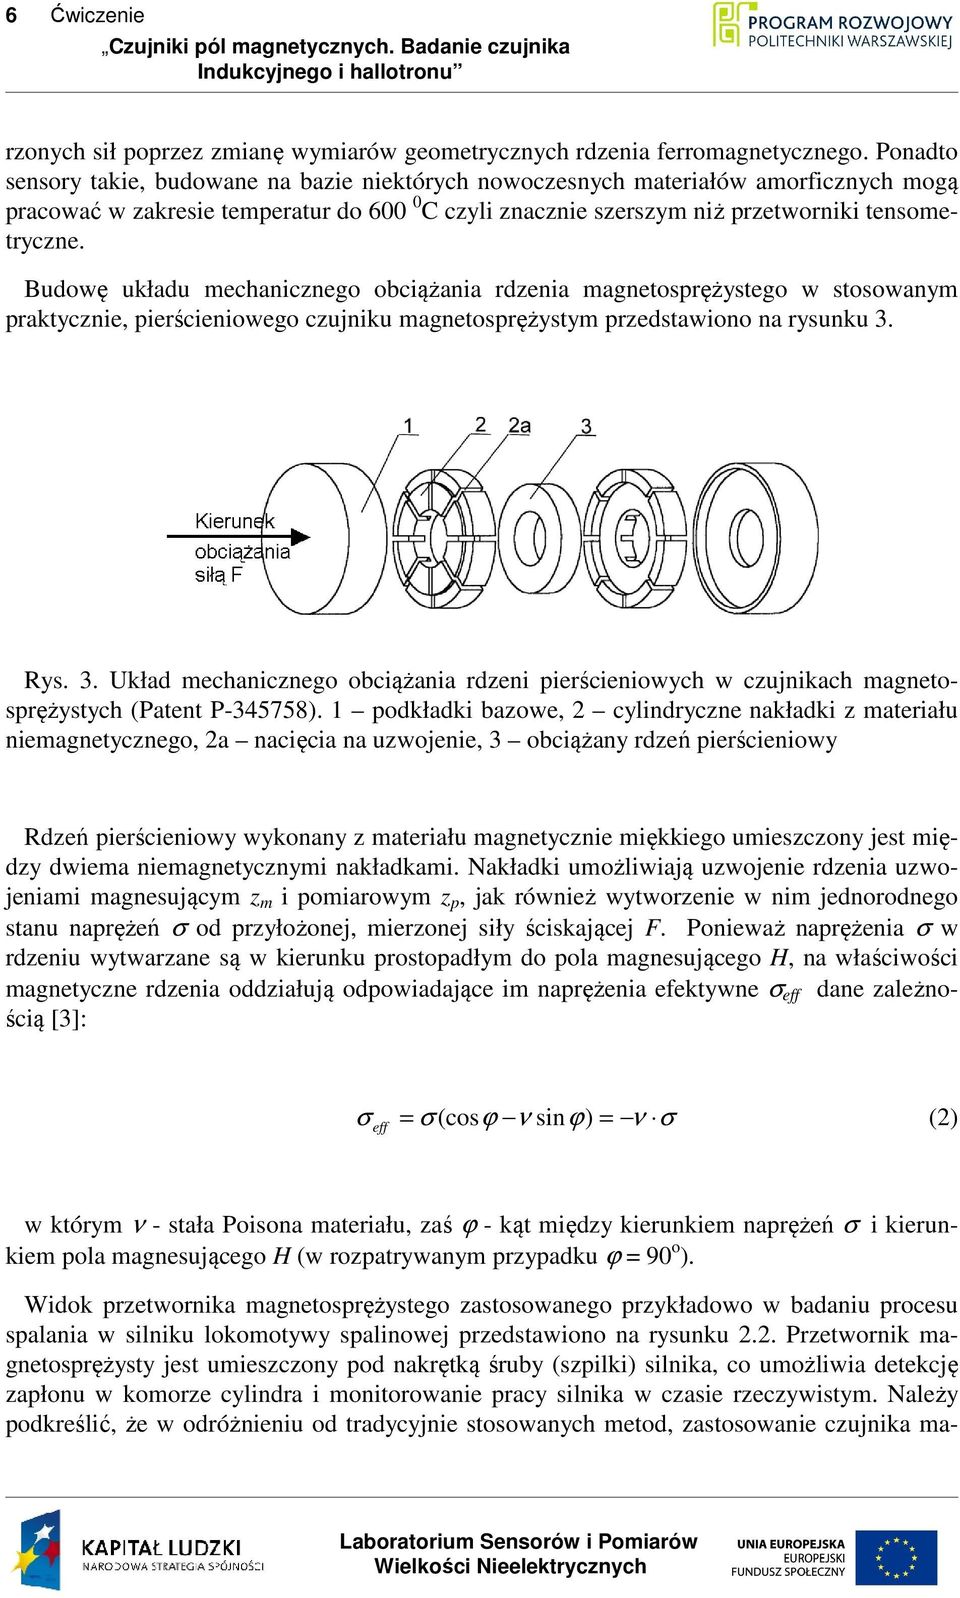 Budowę układu mechanicznego obciążania rdzenia magnetosprężystego w stosowanym praktycznie, pierścieniowego czujniku magnetosprężystym przedstawiono na rysunku 3.